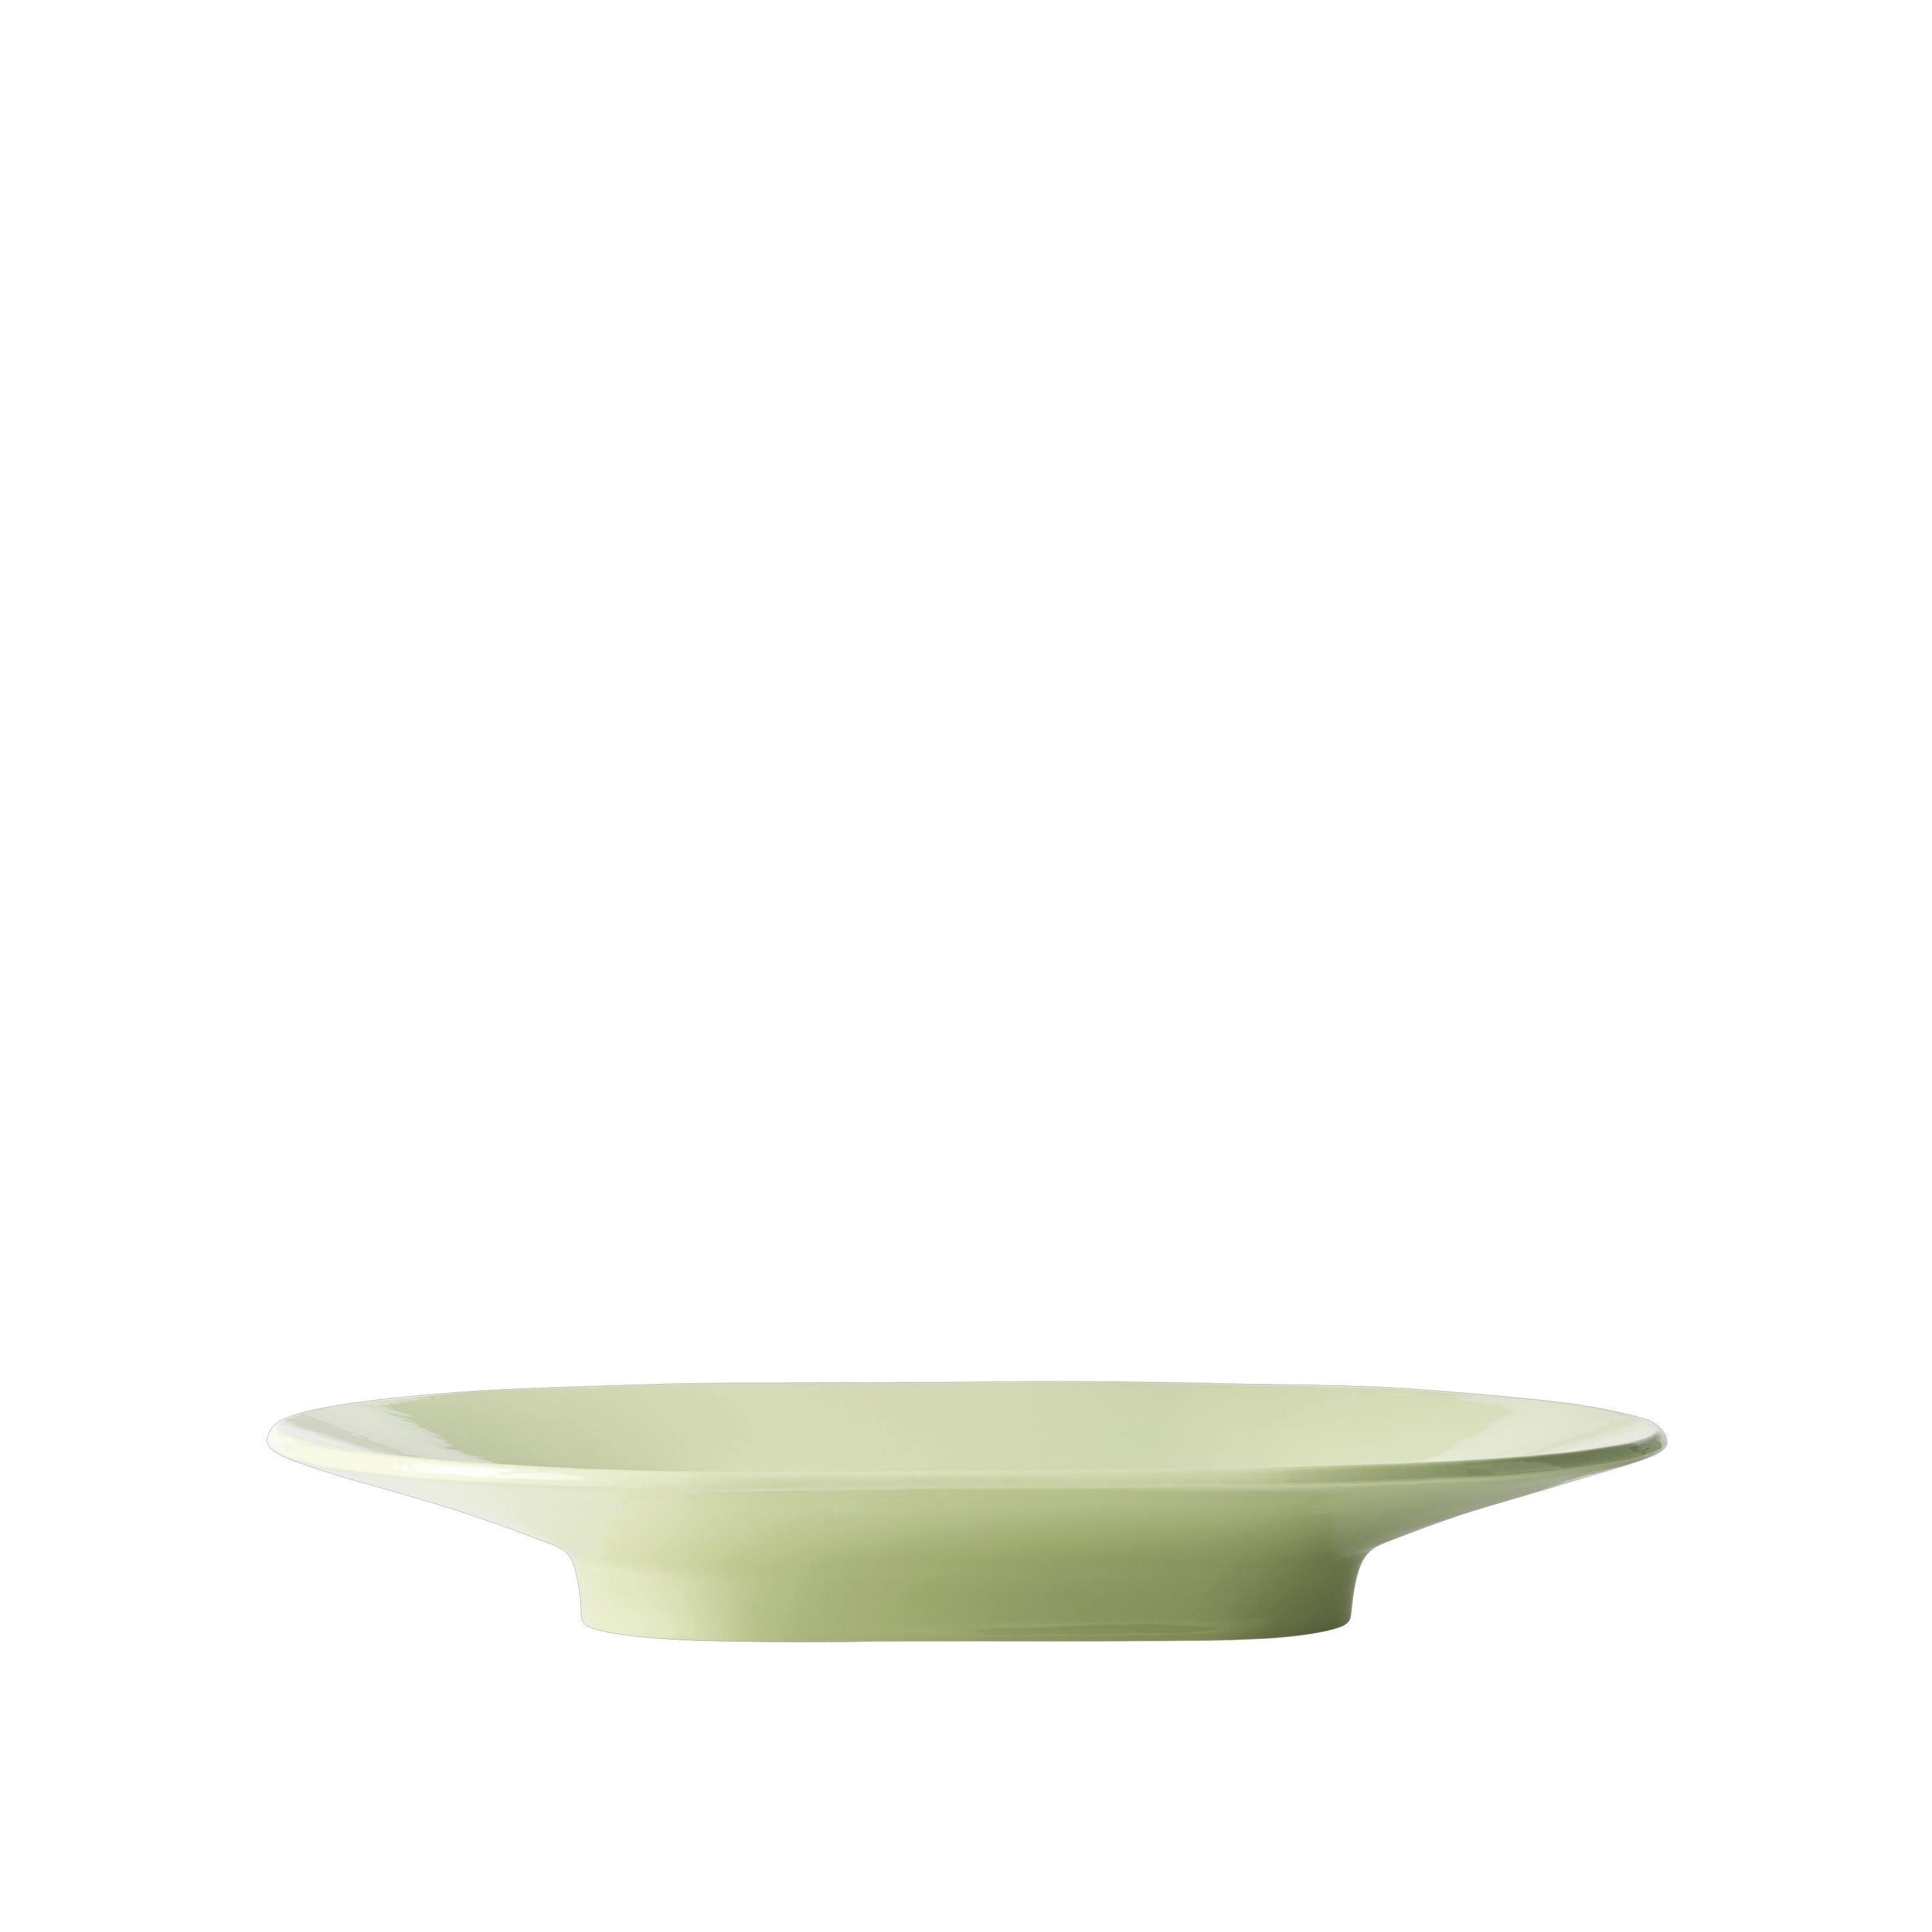 Muuto Blot skål lysegrøn, 52 x 36 cm